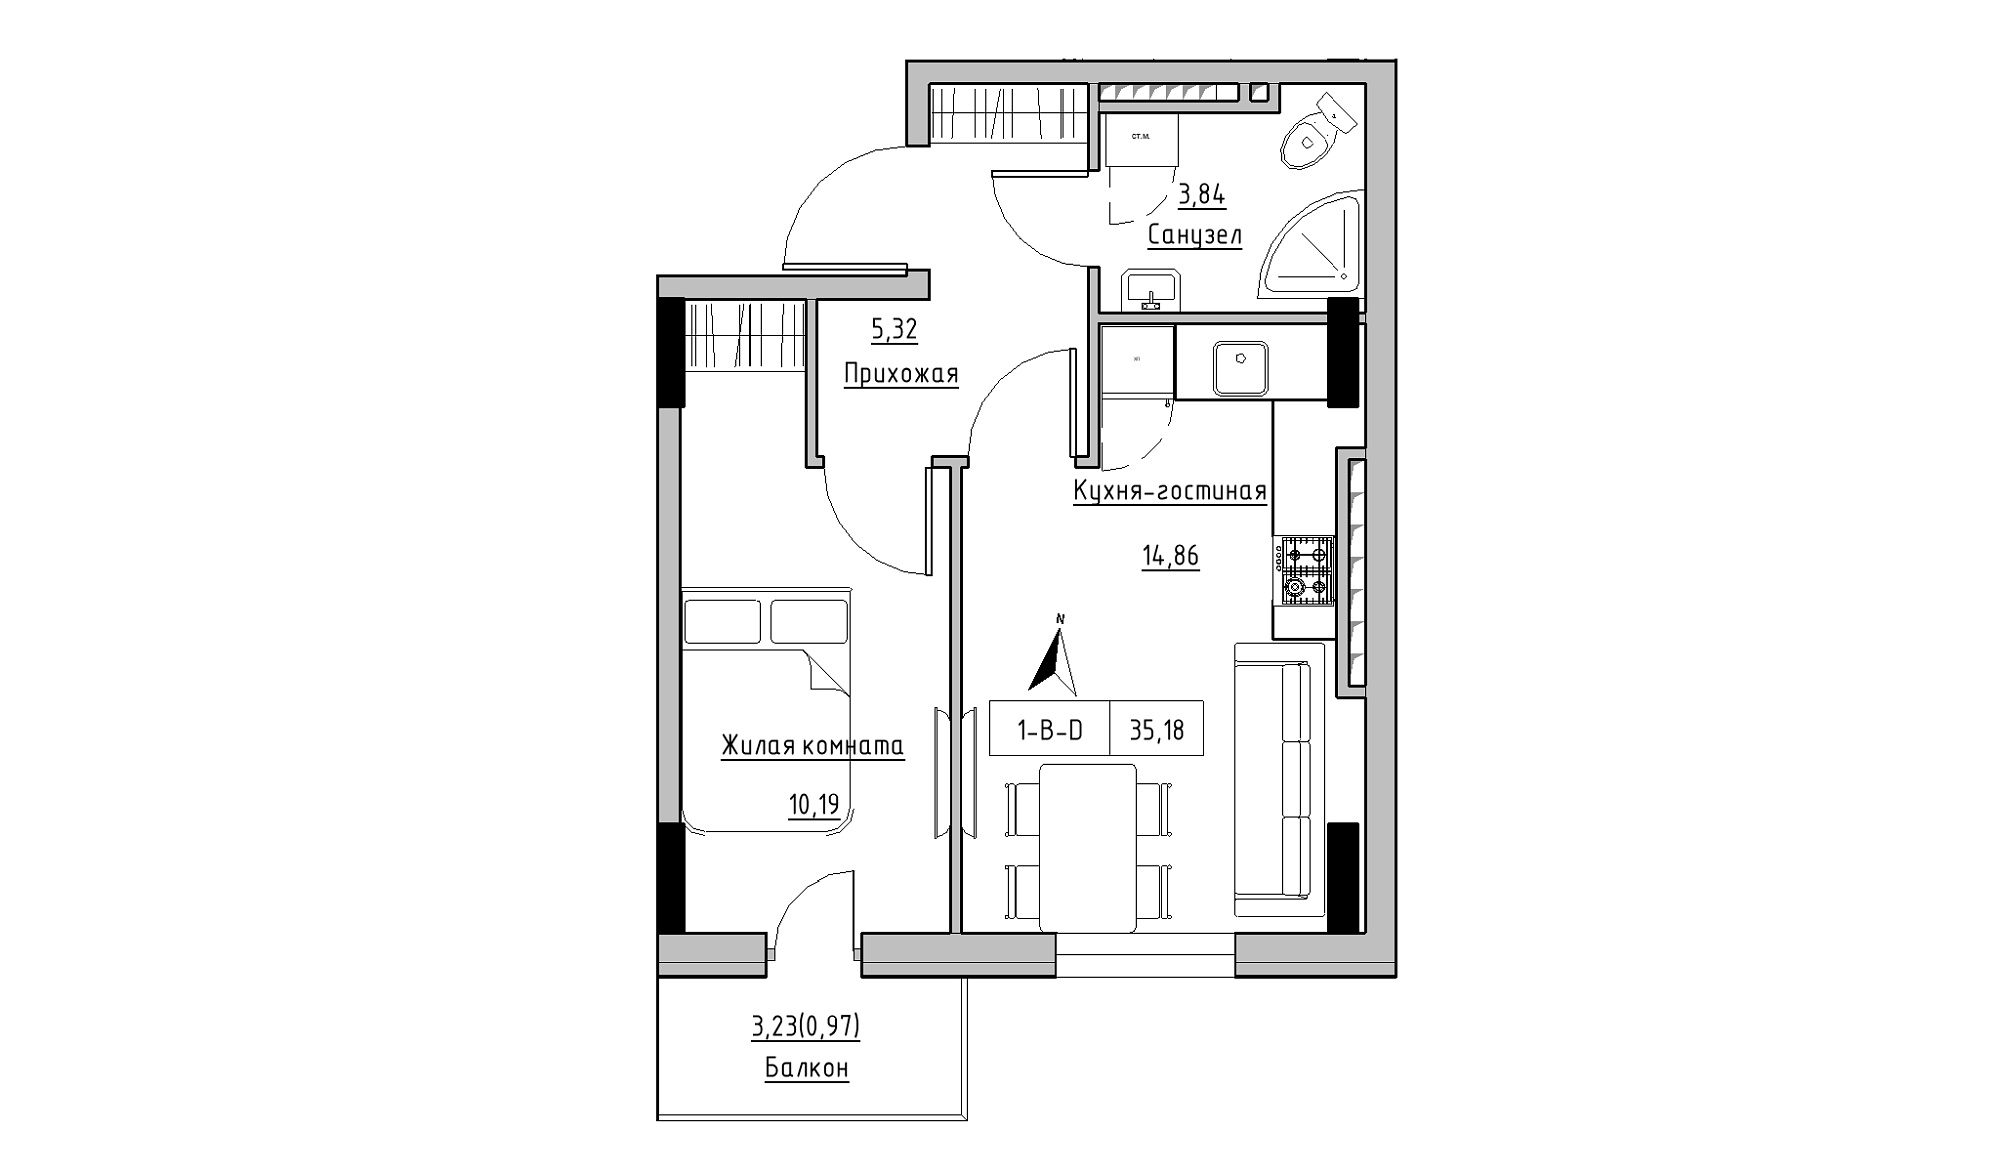 Планування 1-к квартира площею 35.18м2, KS-025-06/0012.